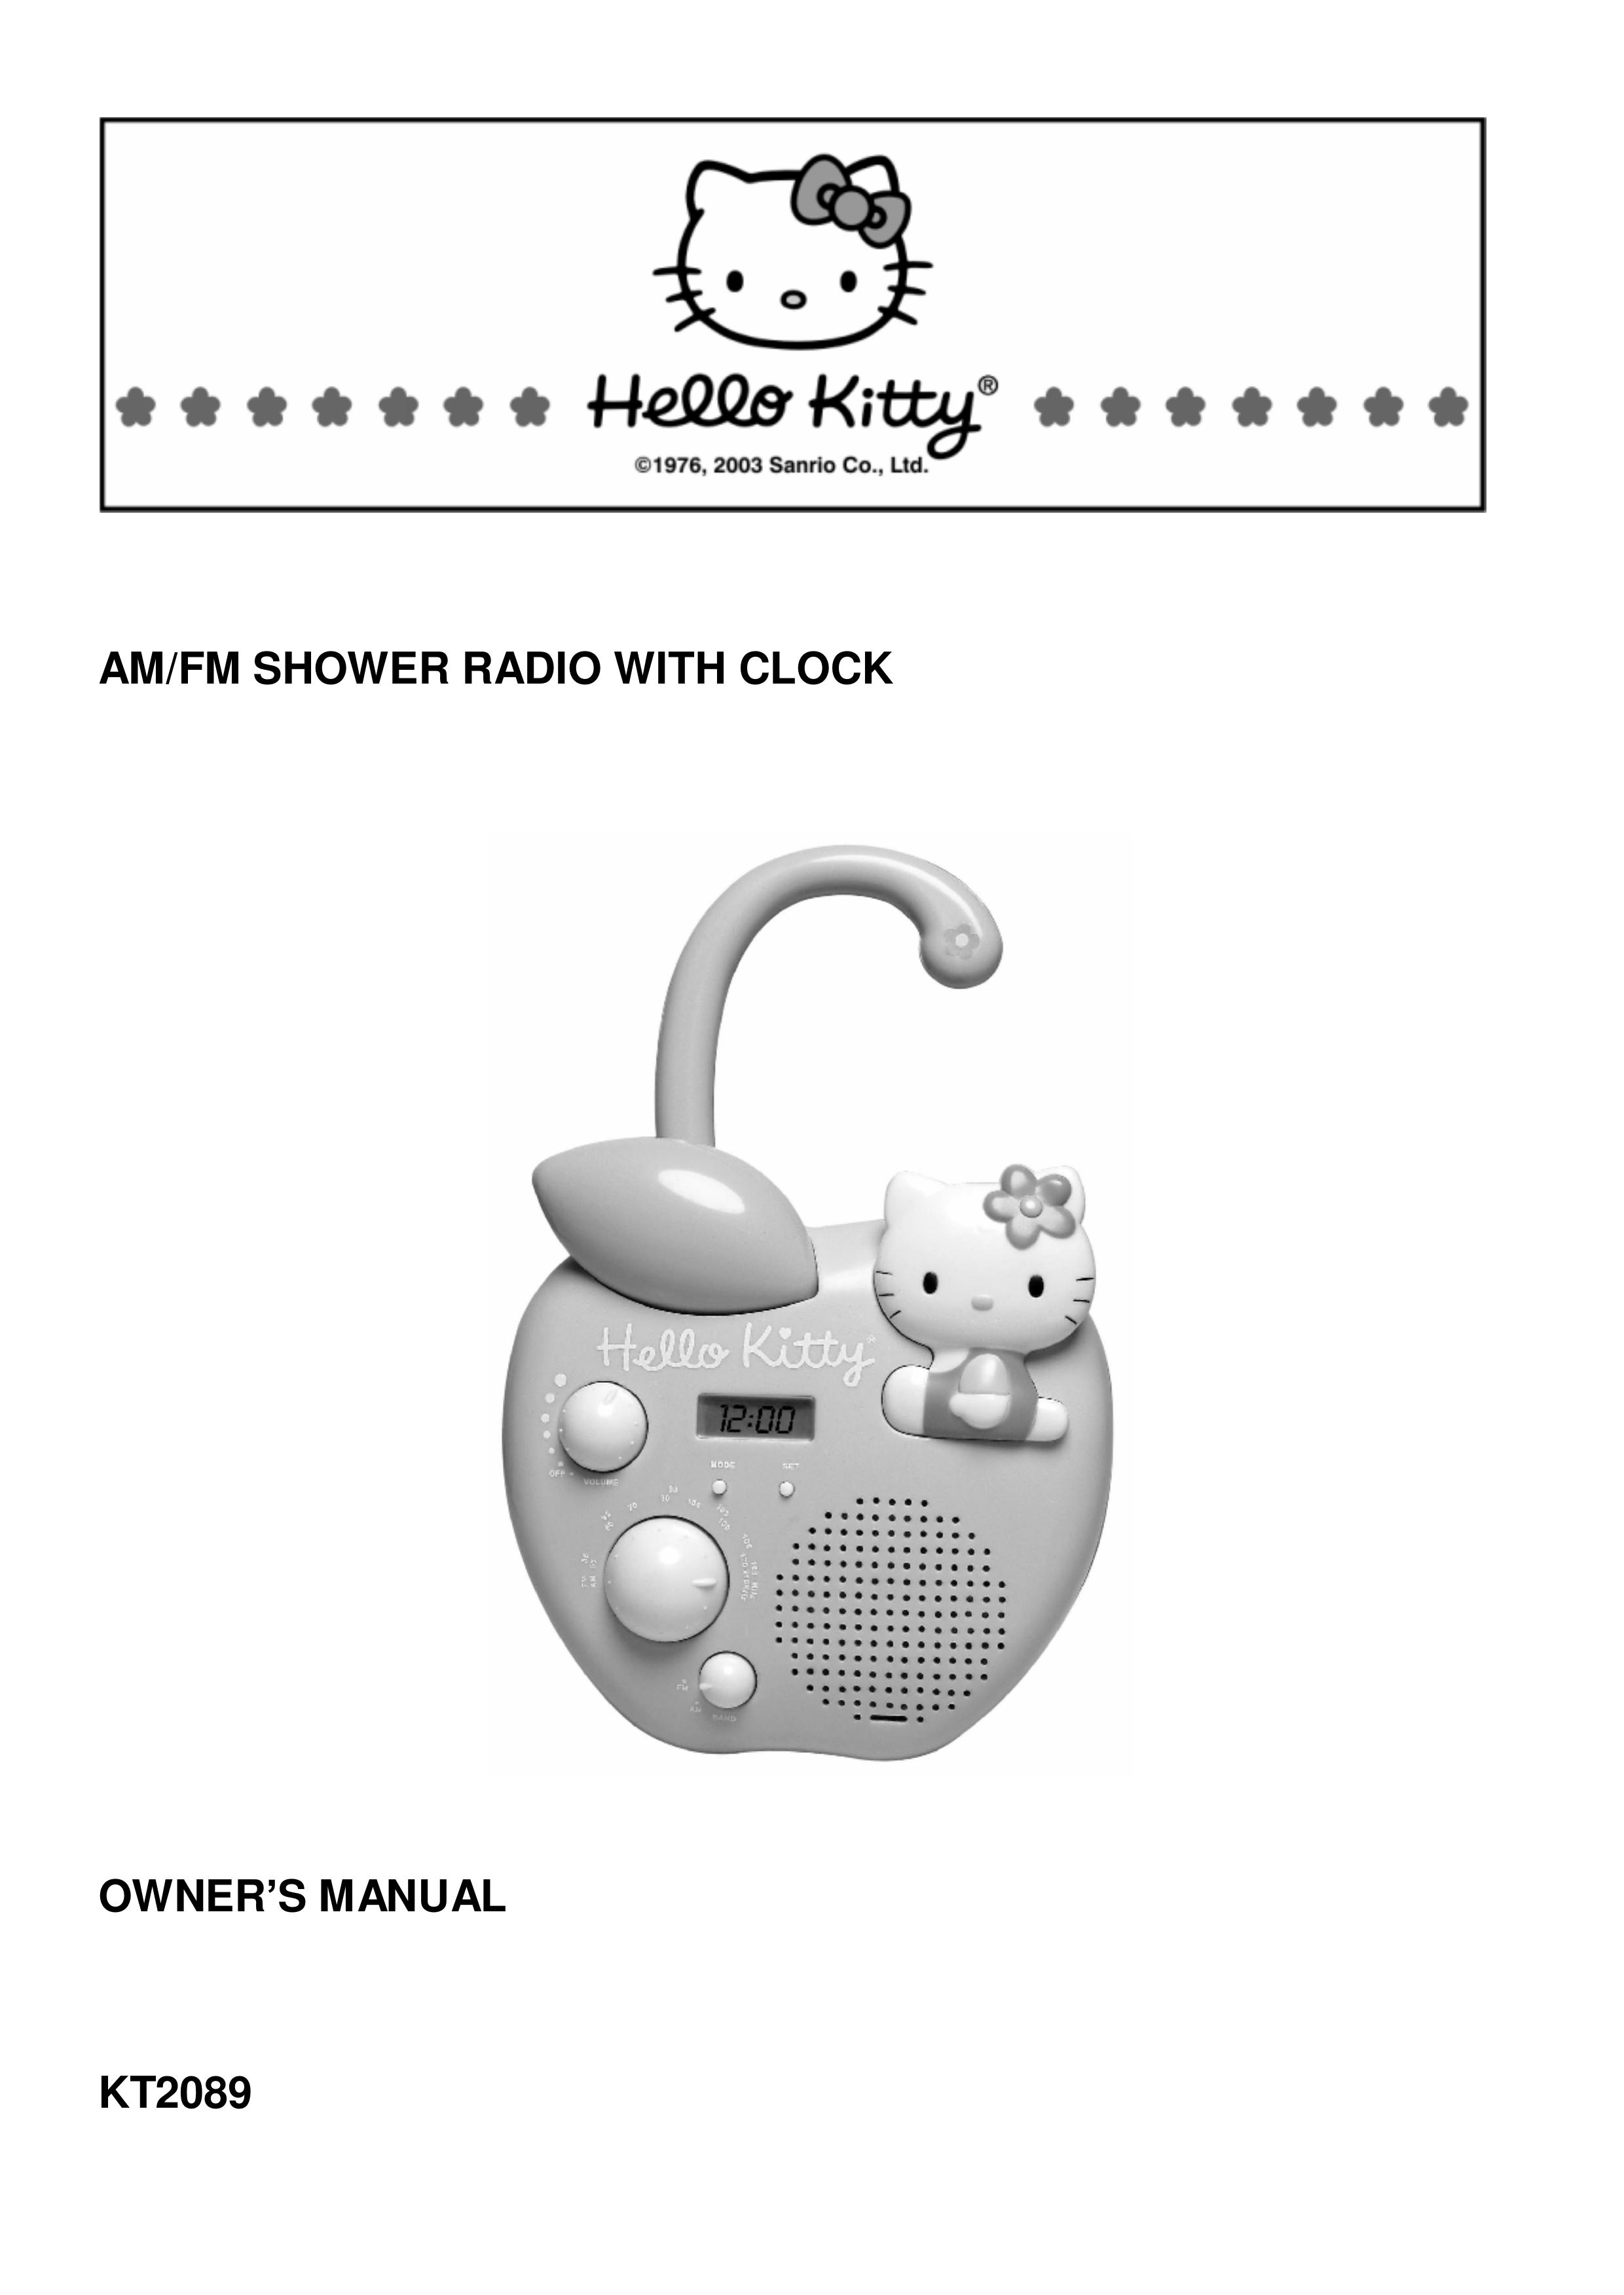 Spectra KT2089 Clock Radio User Manual